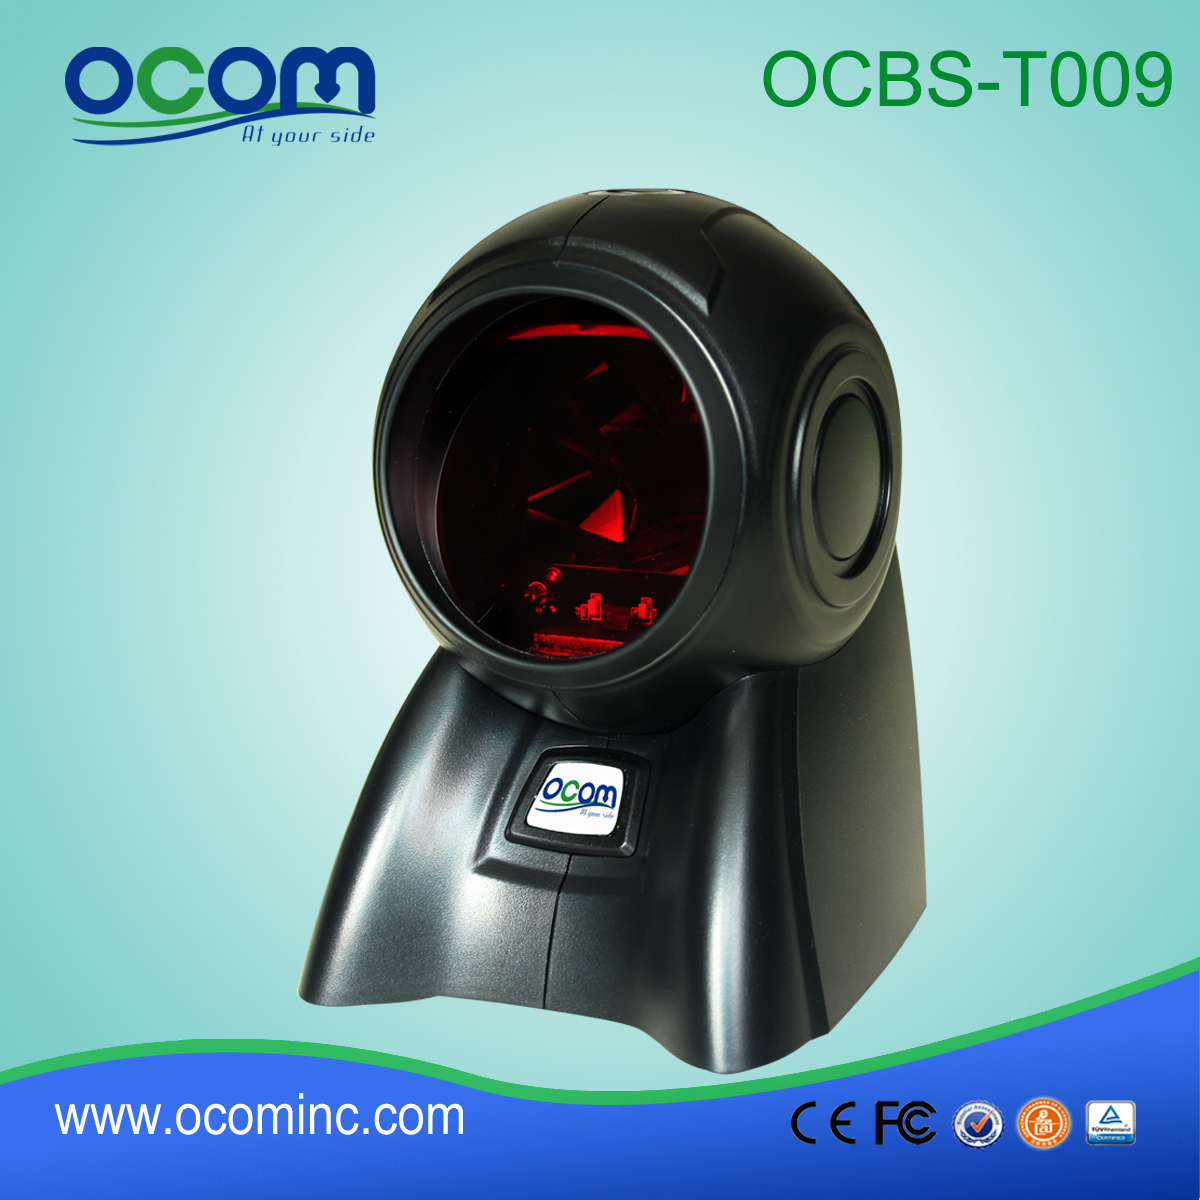 OCBs-T009 omnidirezionale laser scanner POS sulla scrivania